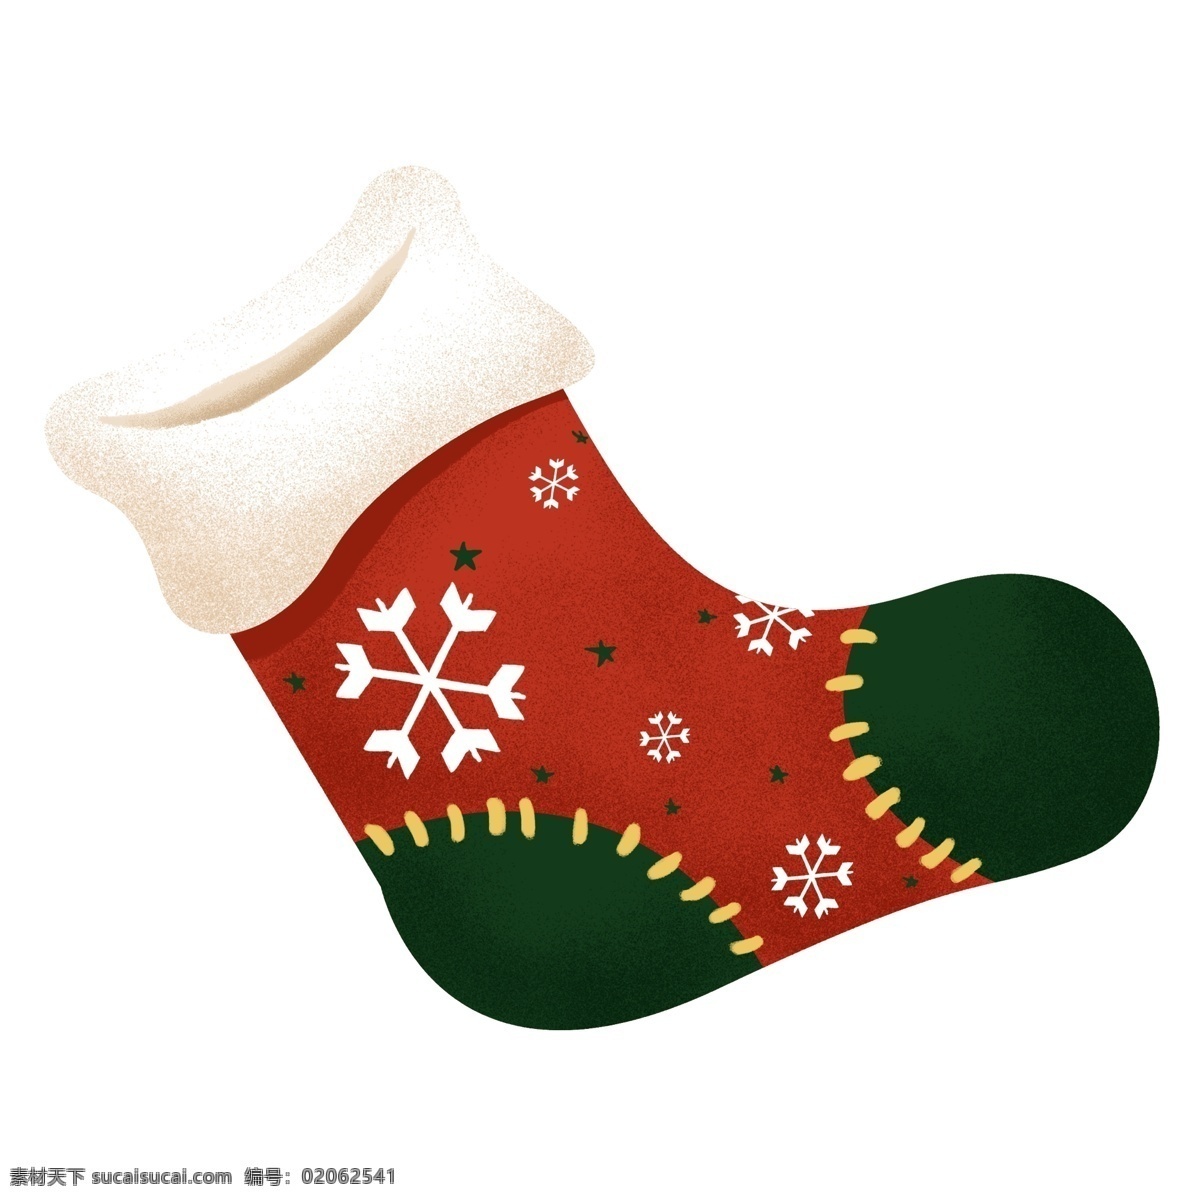 手绘 卡通 可爱 圣诞节 袜子 原创 元素 原创元素 圣诞老人 礼物